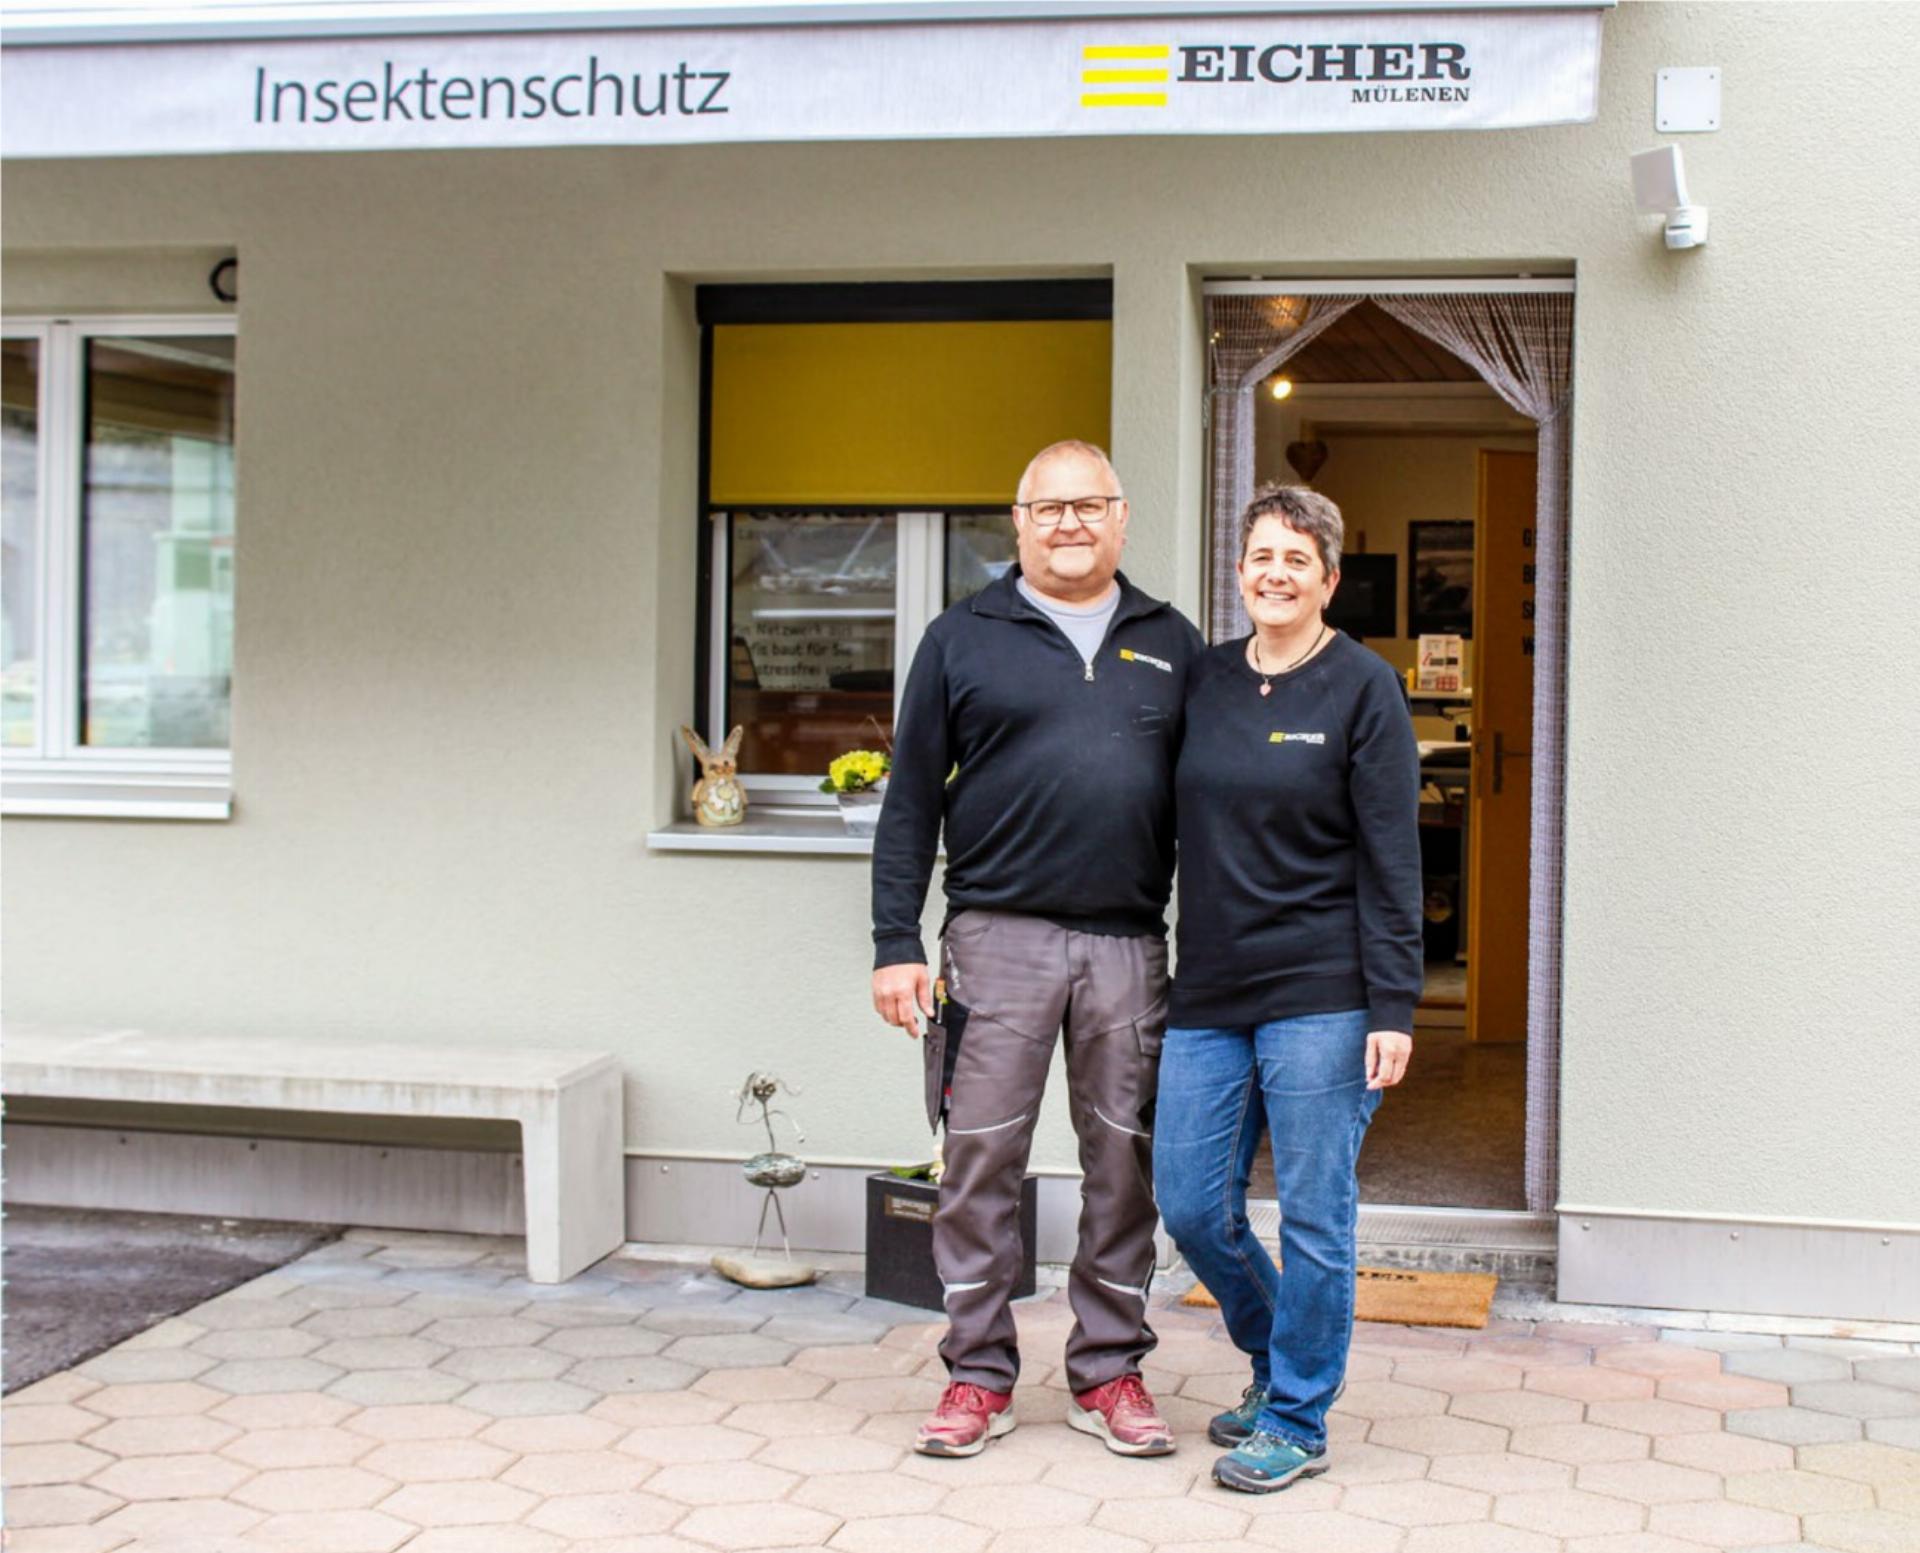 Daniel und Manuela Schärz-Eicher haben die Eicher Mülenen AG von einer Betonwarenherstellerin zu einem Dienstleistungsunternehmen im Bereich Storenbau und Insektenschutz entwickelt. BILD: MICHAEL MAURER